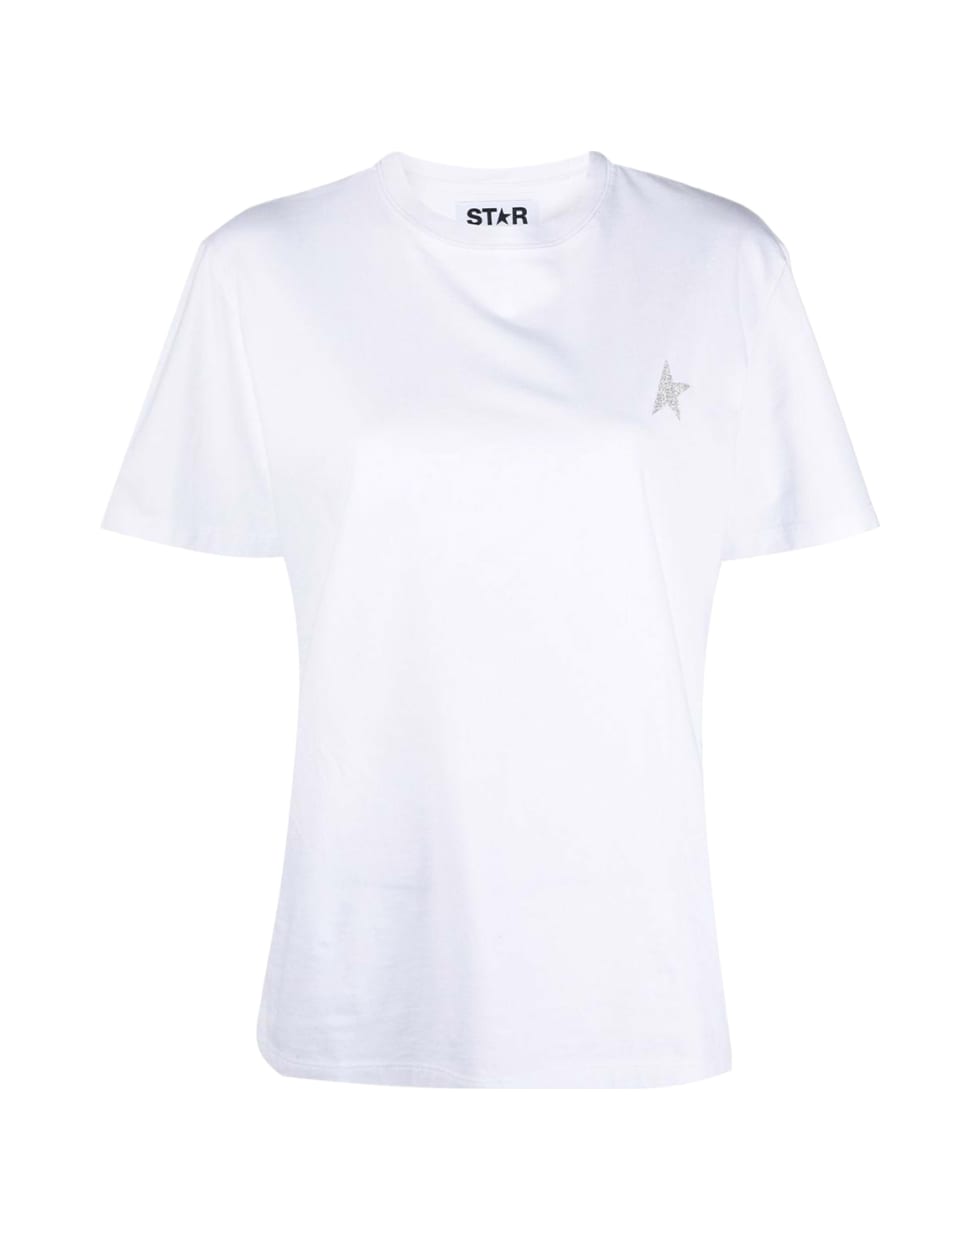 Golden Goose Star W`s Regular T-shirt / Small Star/ Glitter - White Silver